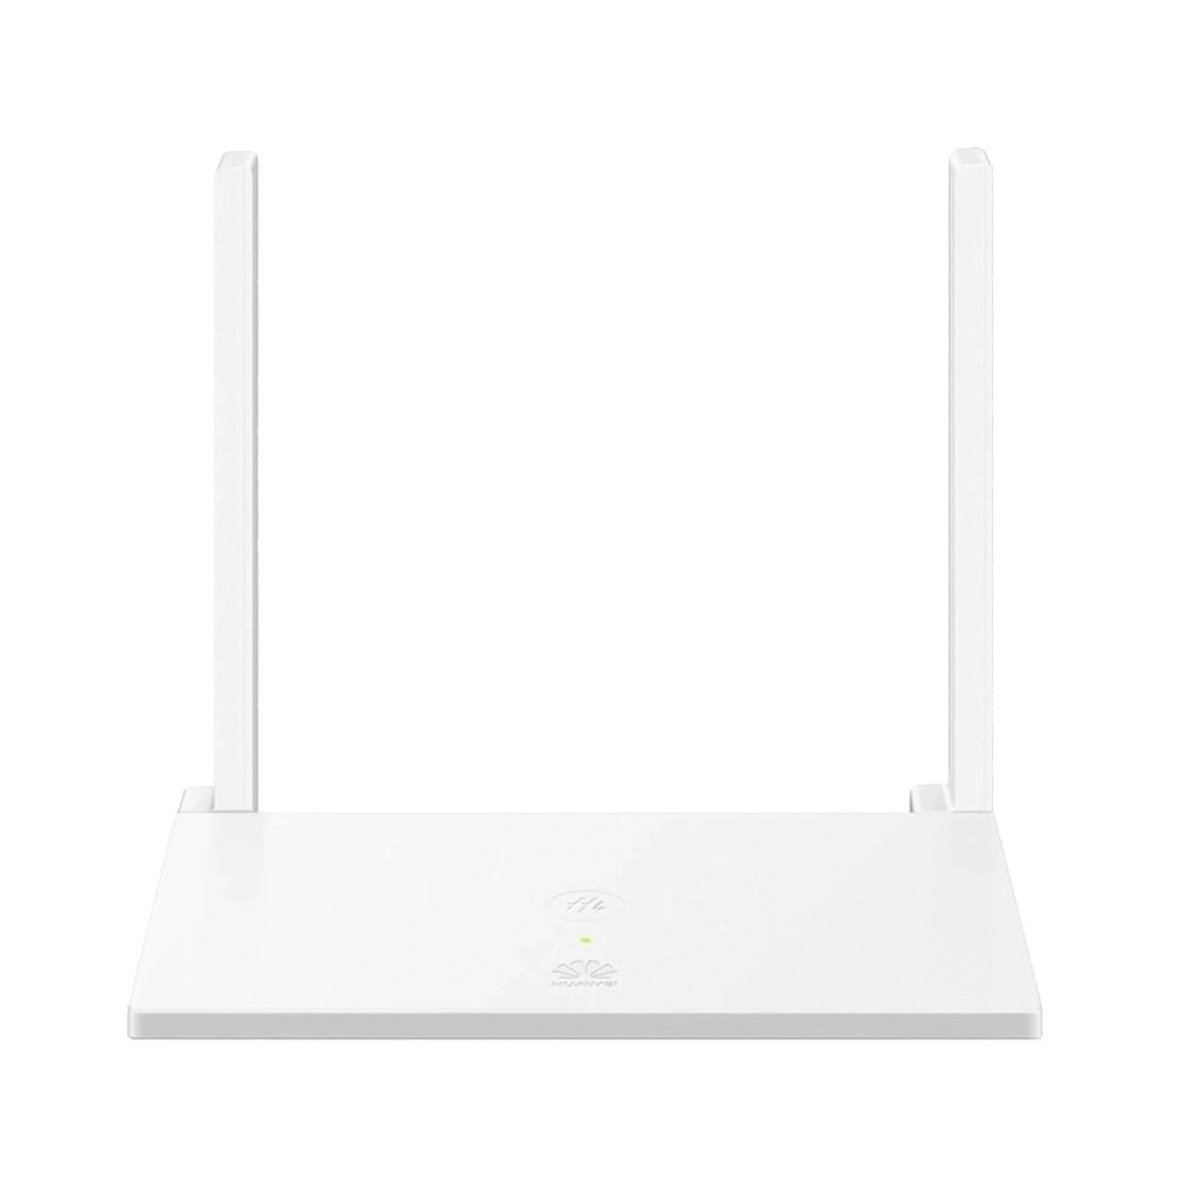 Huawei Wireless Wifi Router WS318N